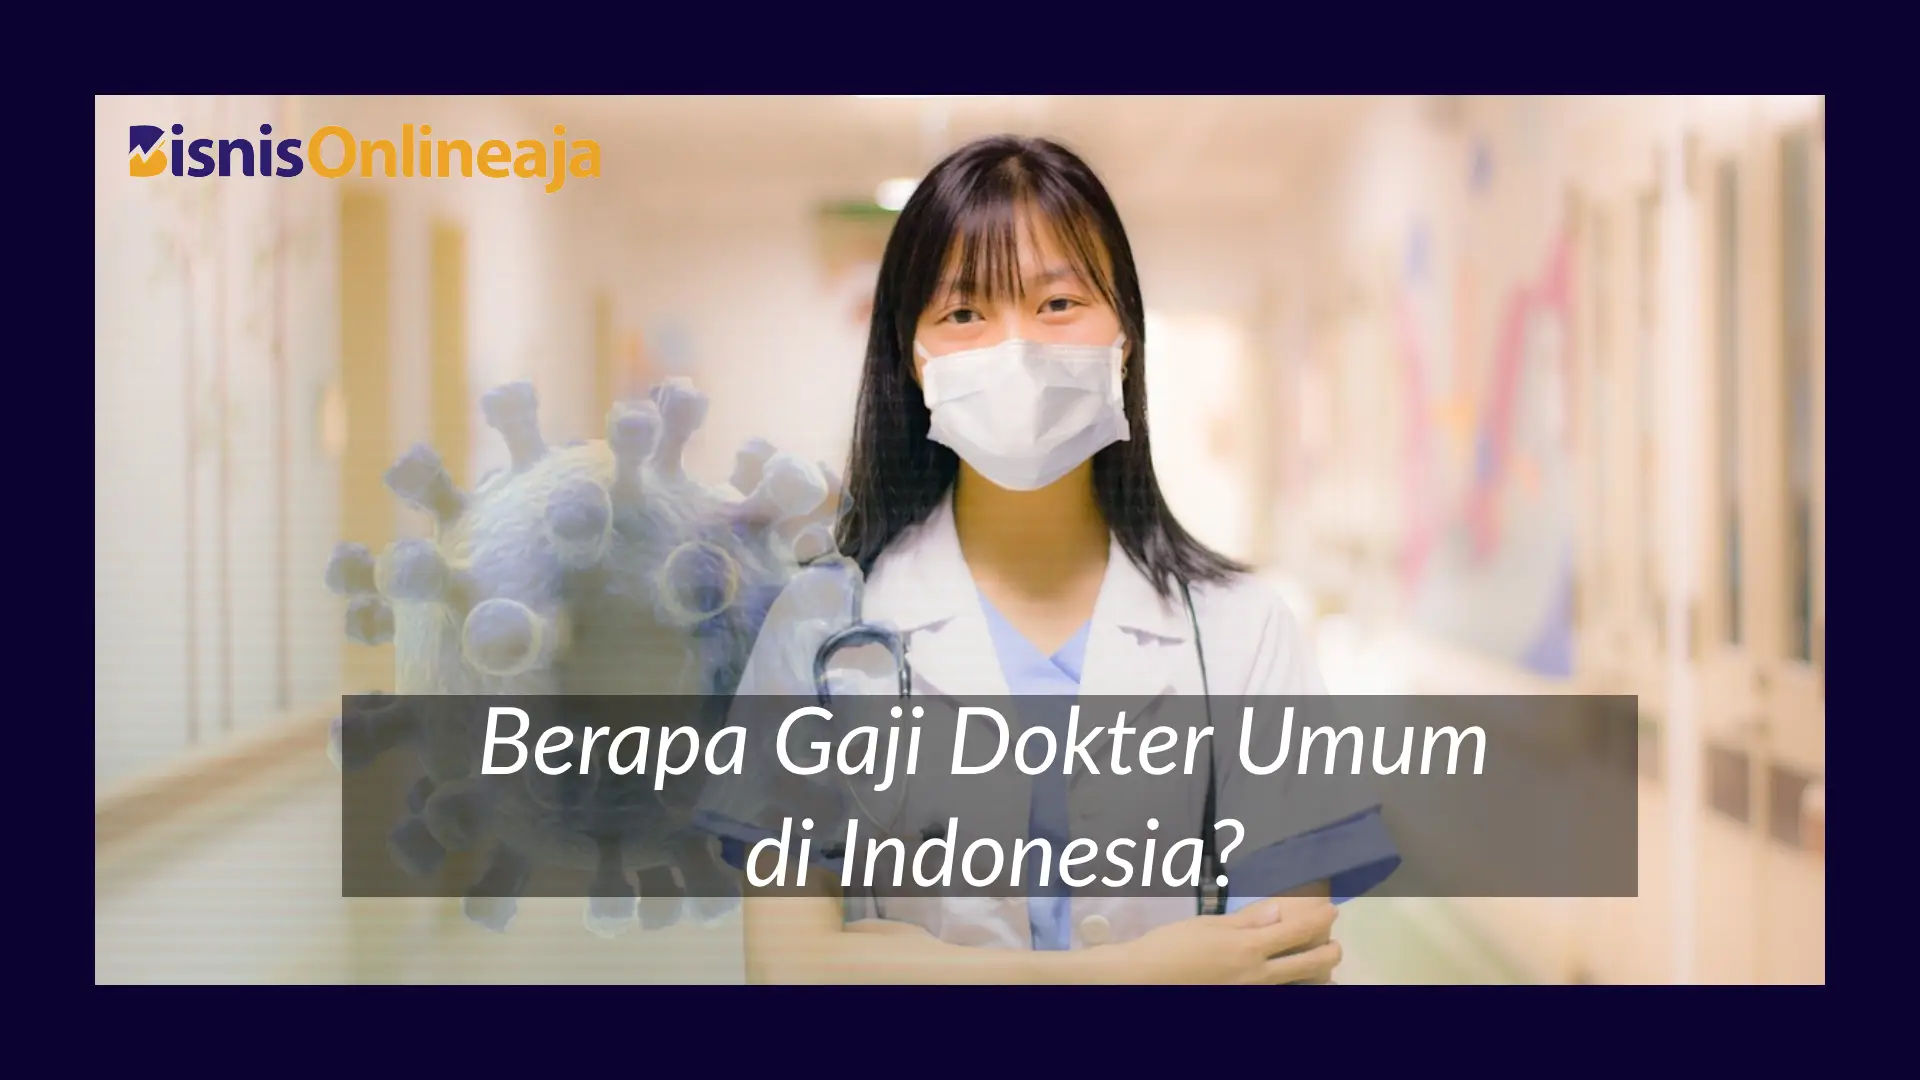 Berapa Gaji Dokter Umum di Indonesia